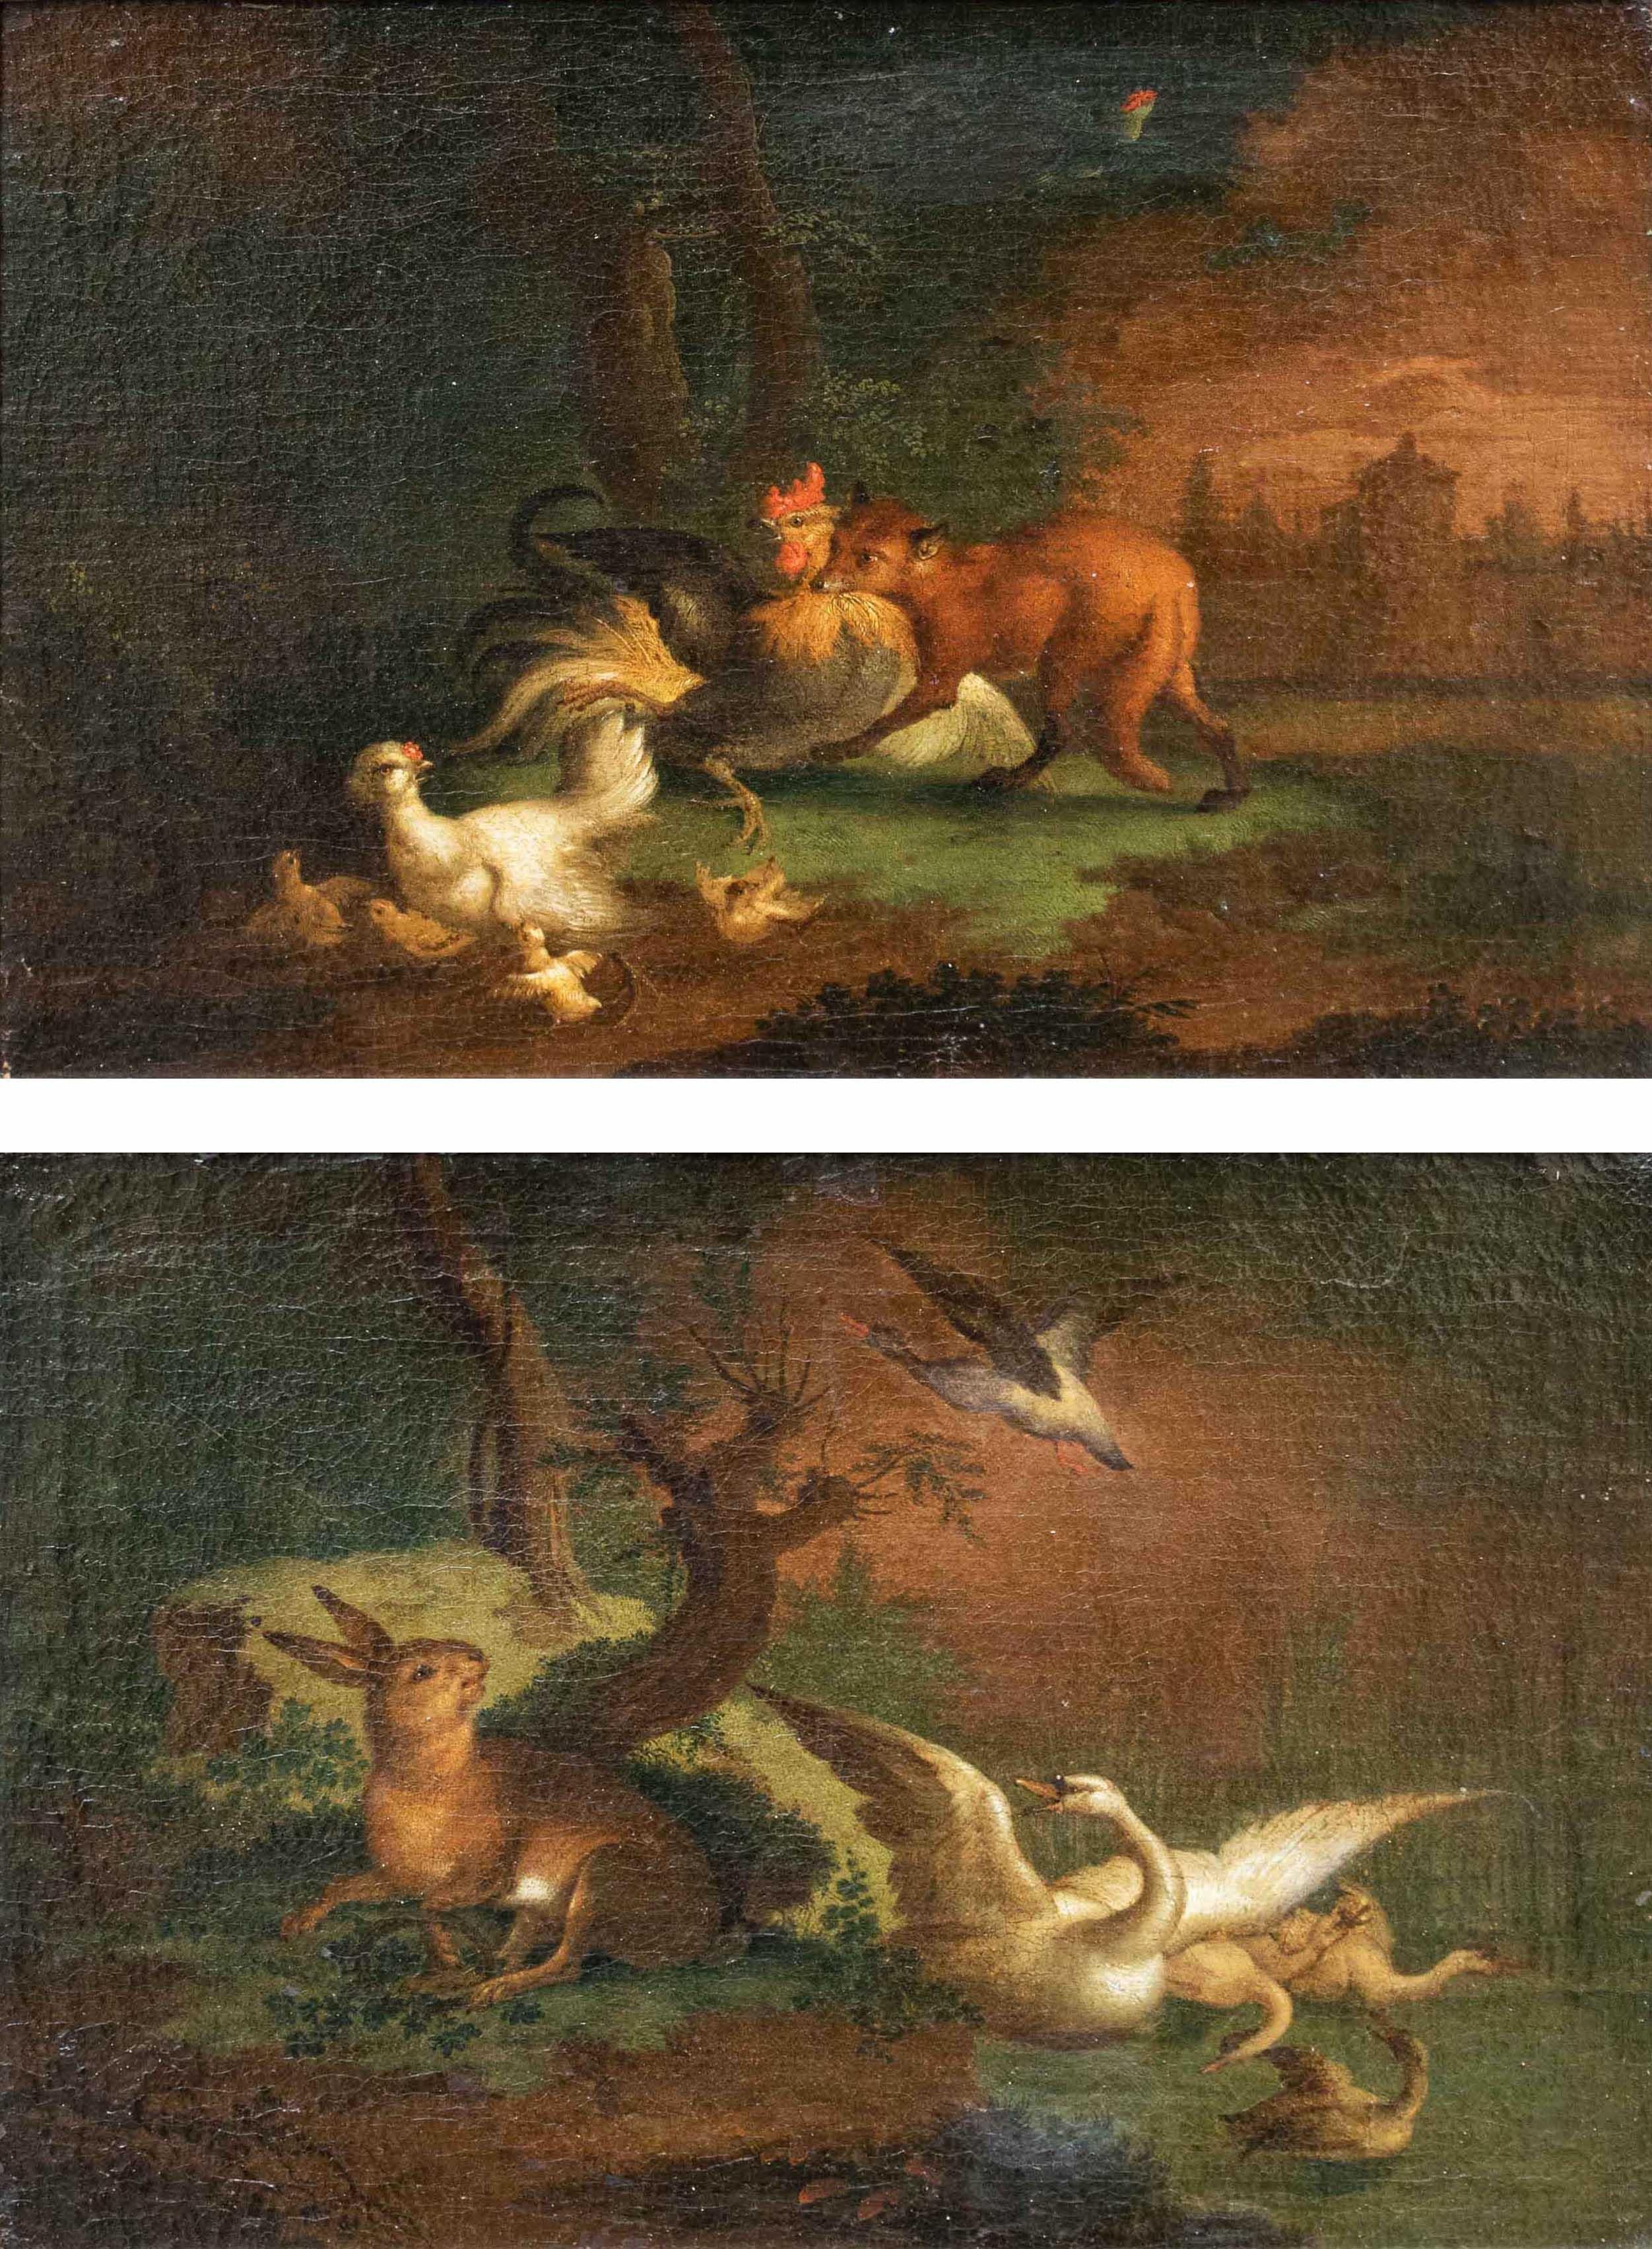 Flämische Schule, 17. Jahrhundert

Live-Nature-Paar mit Tieren

Maße: Öl auf Leinwand, cm 25 x 35 - Mit Rahmen cm 37 x 48

Das betreffende Gemäldepaar zeigt zwei aufgeregte Momente der Jagd; auf dem ersten Werk sind ein Hase und Schwäne zu